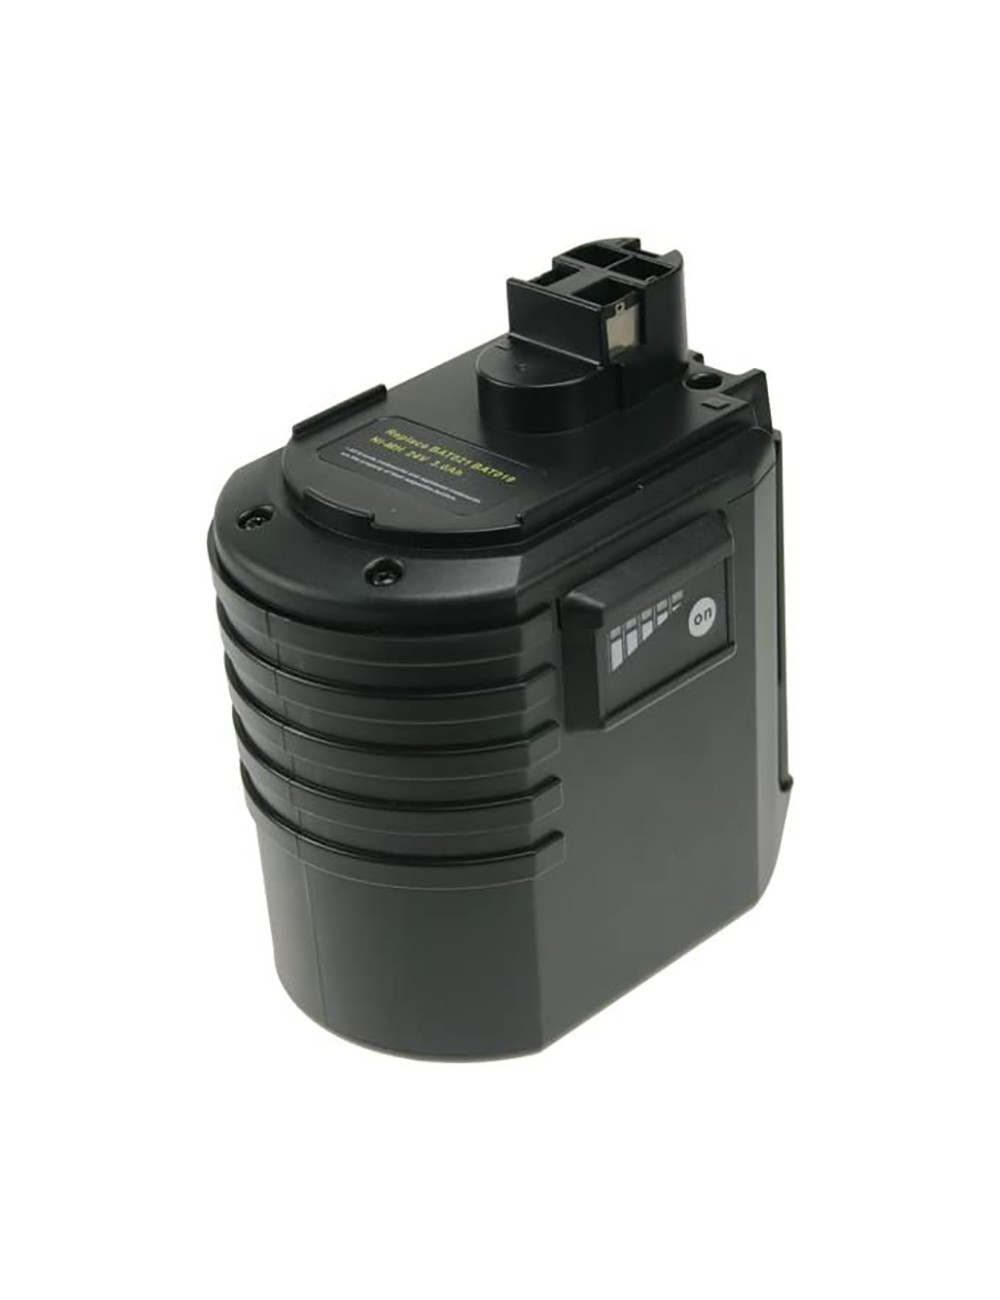 Batería compatible Bosch 2 607 335 216/215/223 y Wurth 702 300 924 de 24V 3Ah 72Wh 2-Power - PTH0084A -  - 5055190127001 - 1